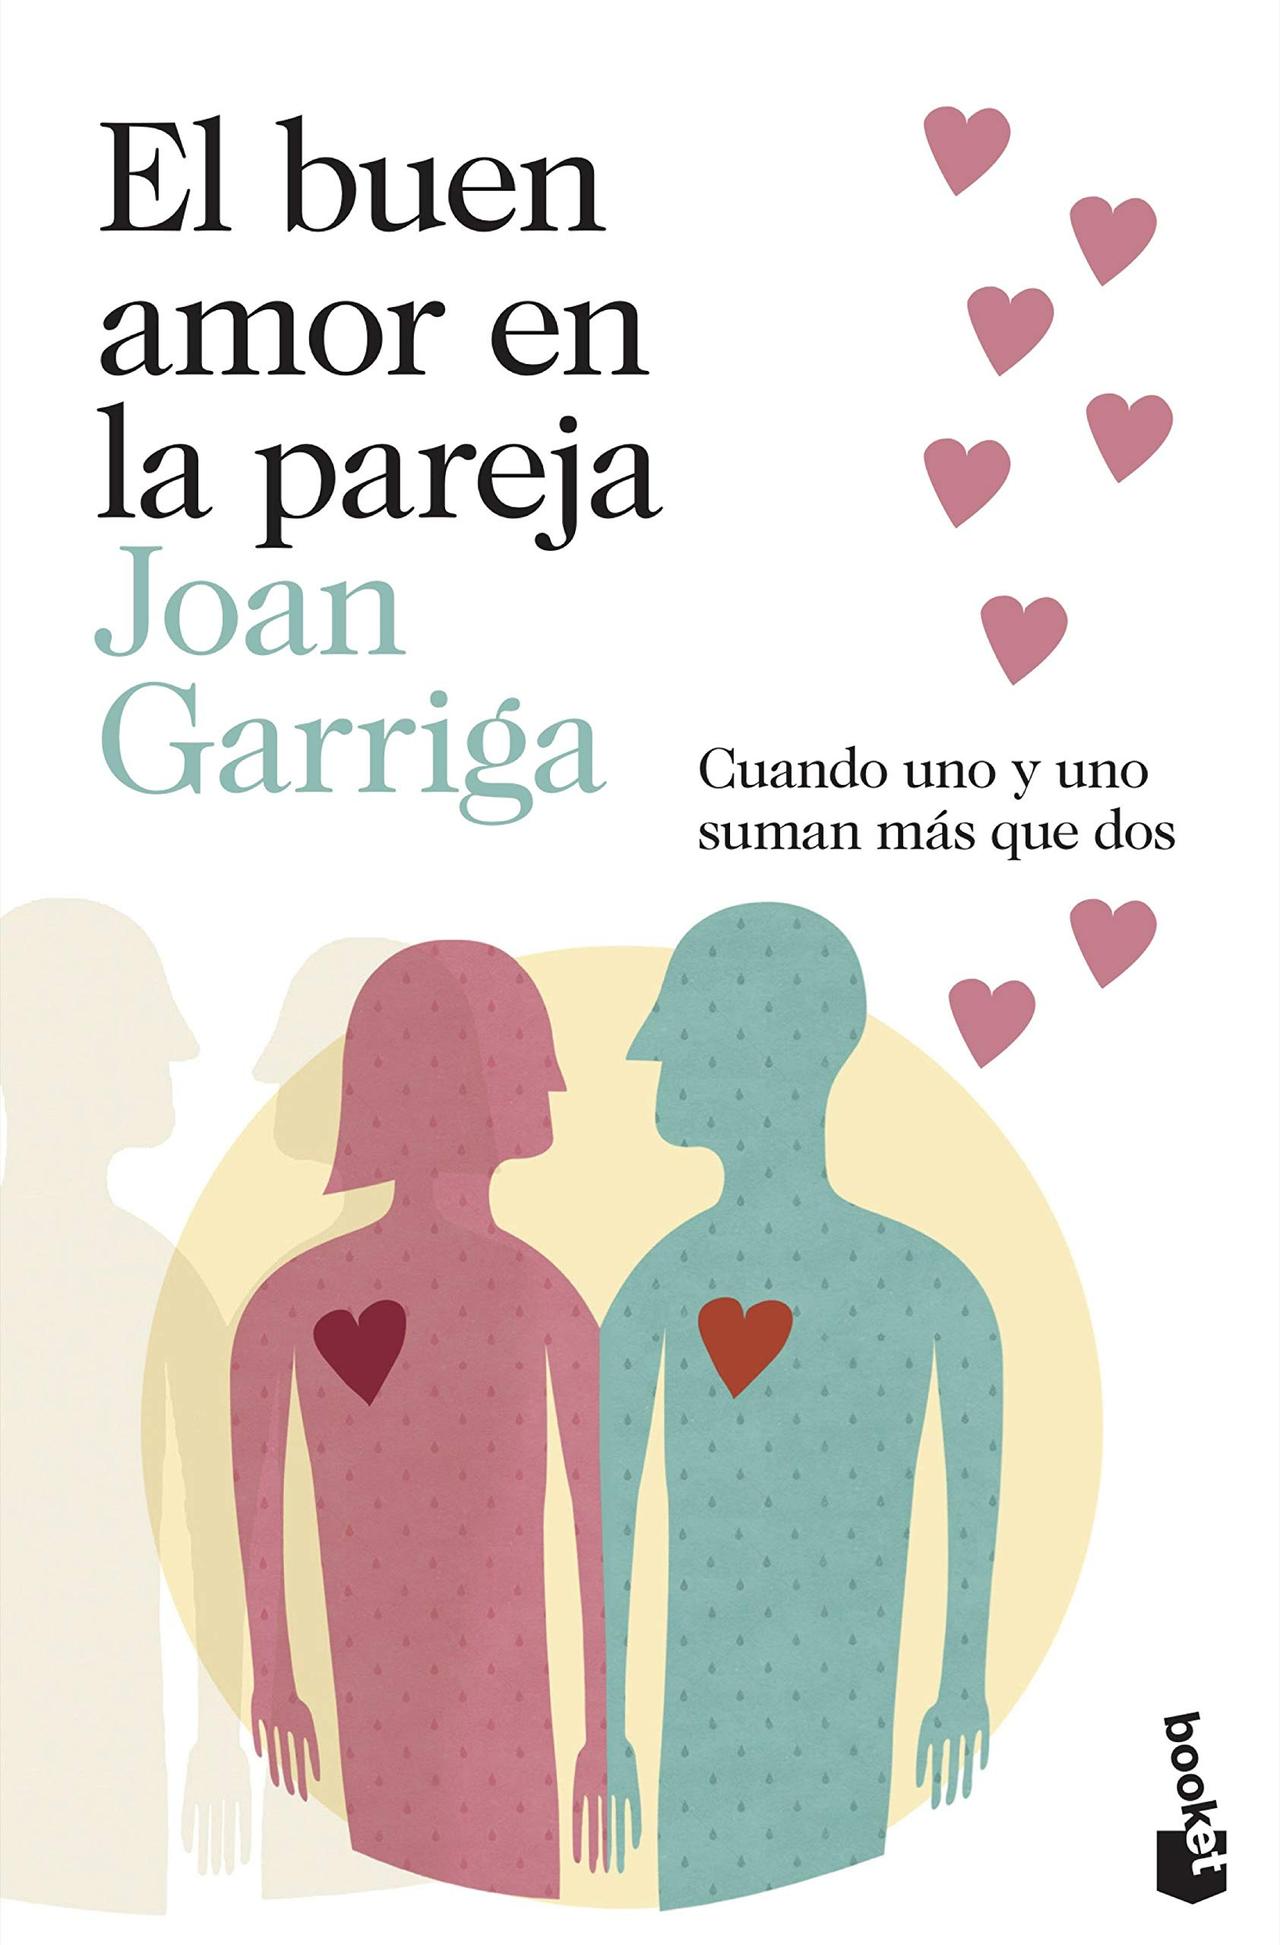 LIBRO DE PLANES EN PAREJA: Diario de parejas para rellenar - Libro